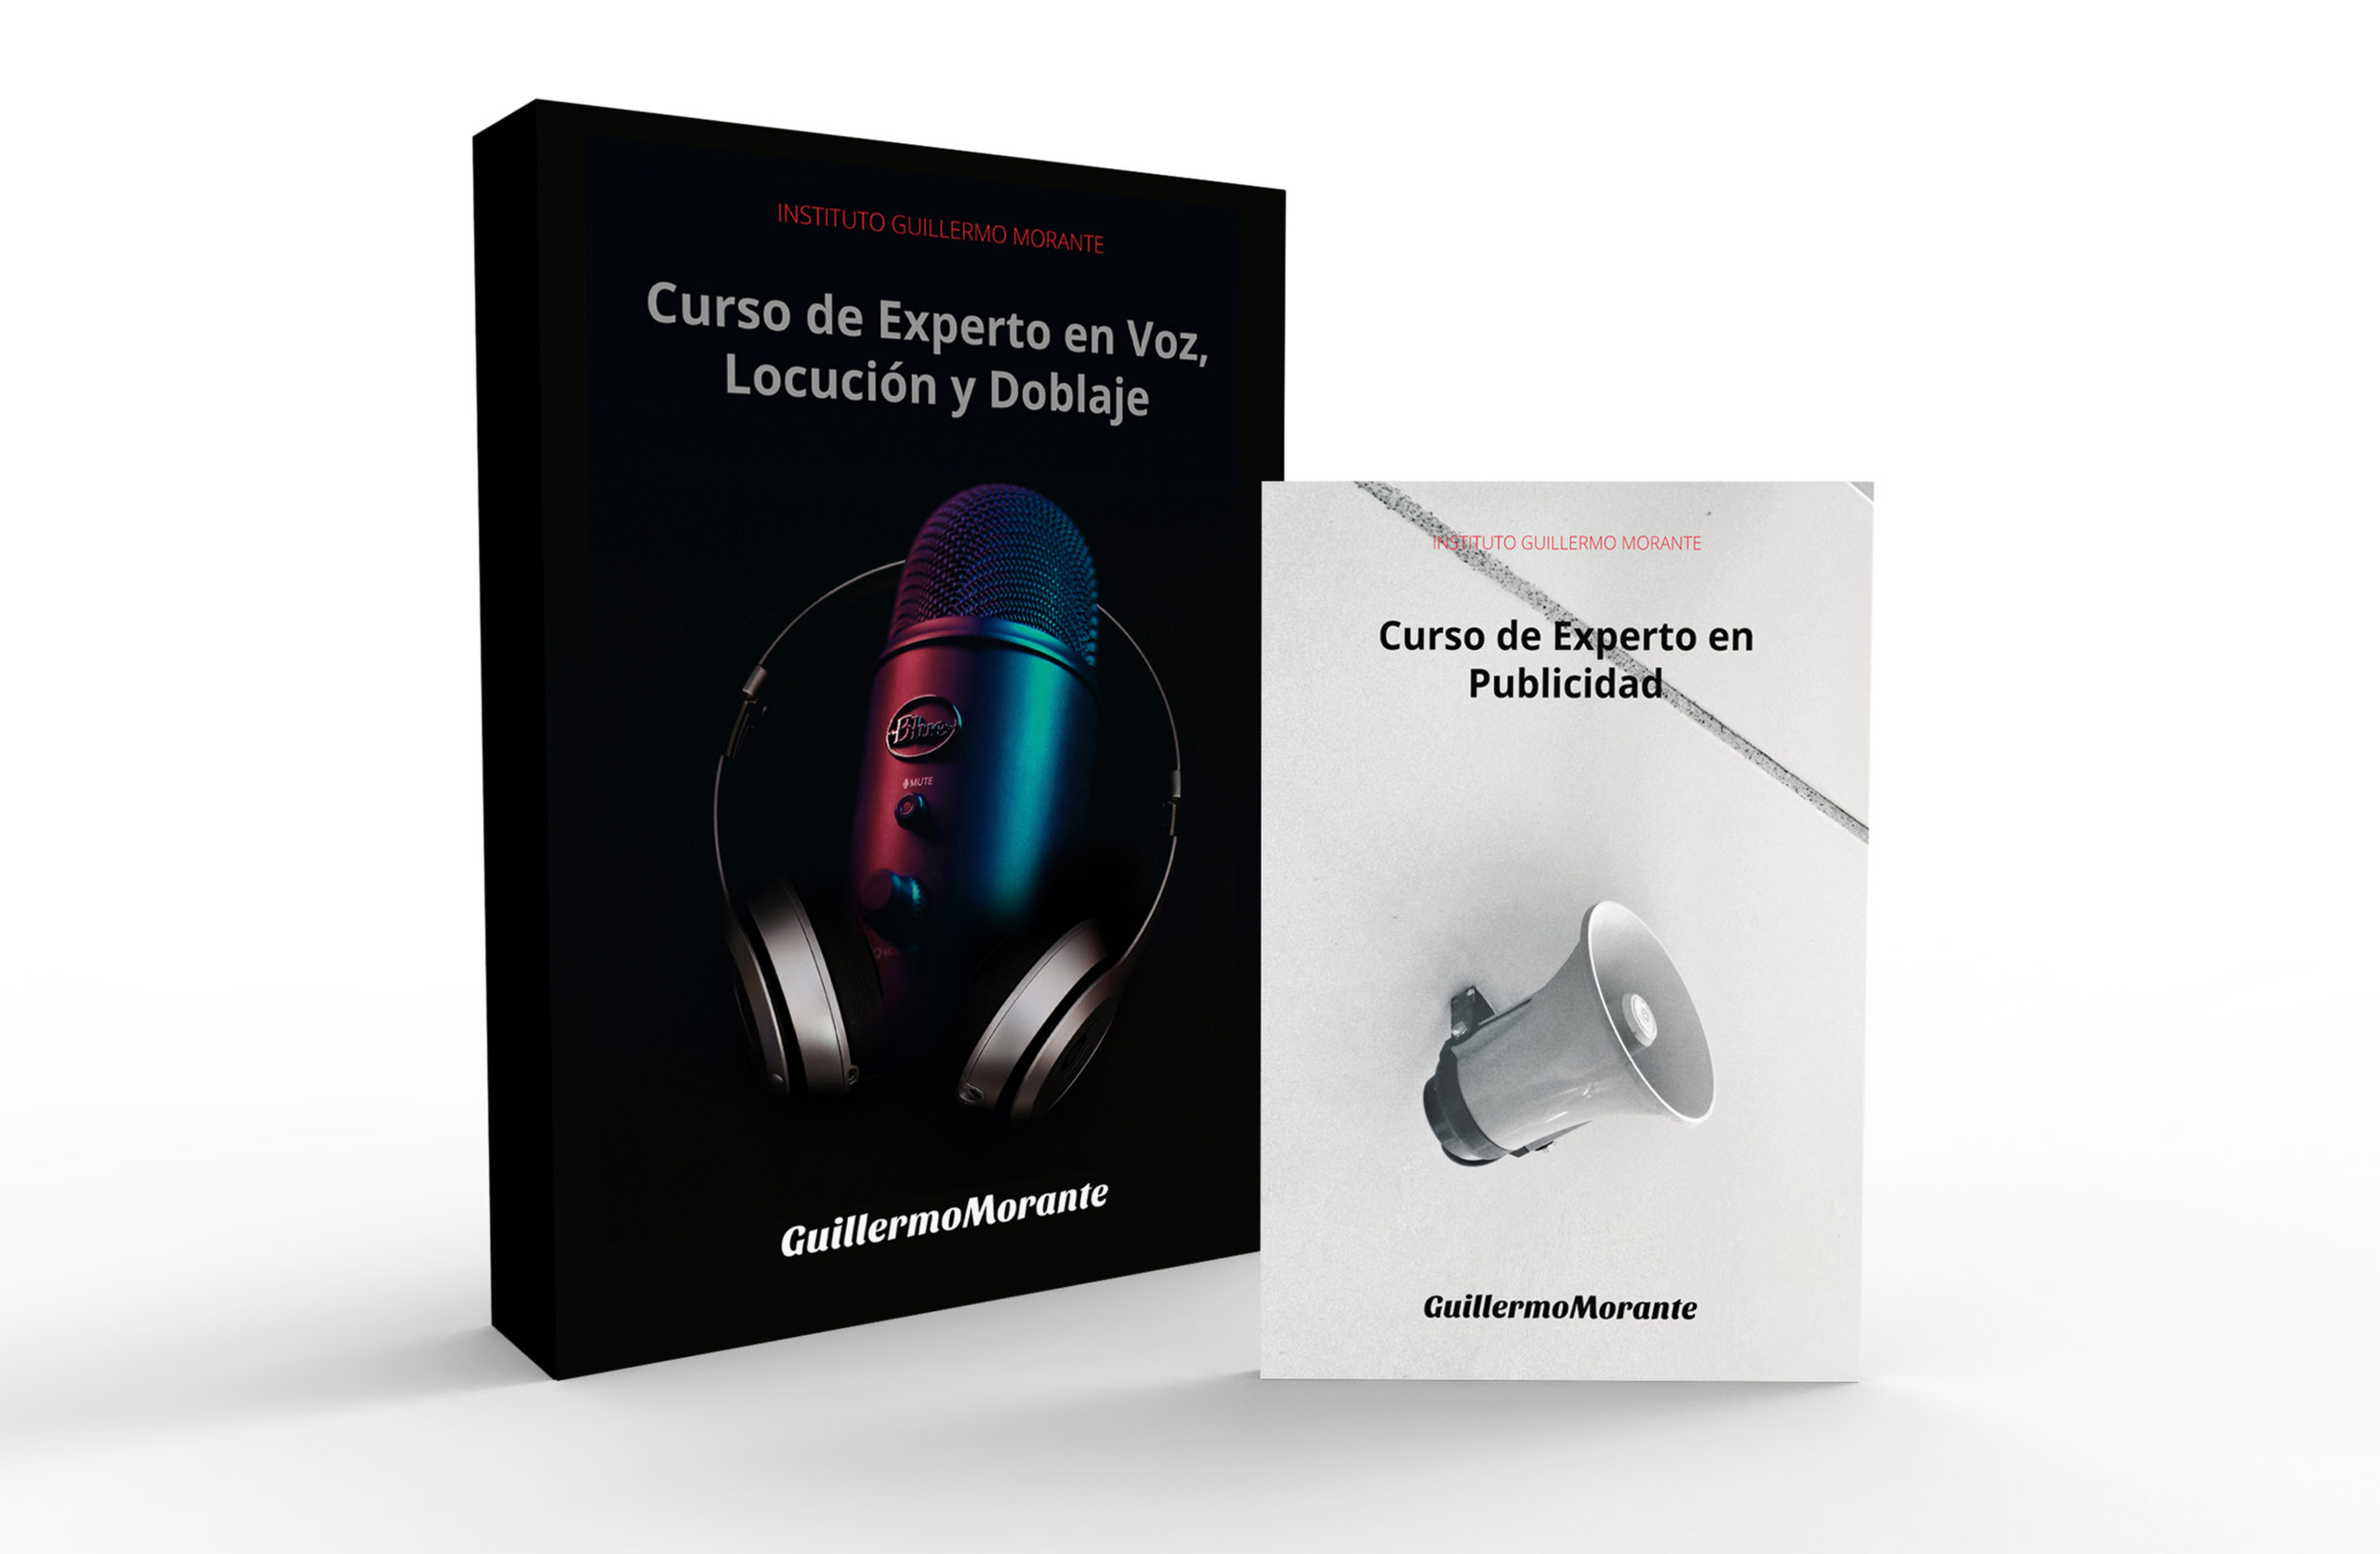 Curso Experto en Voz + Publicidad Guillermo Morante